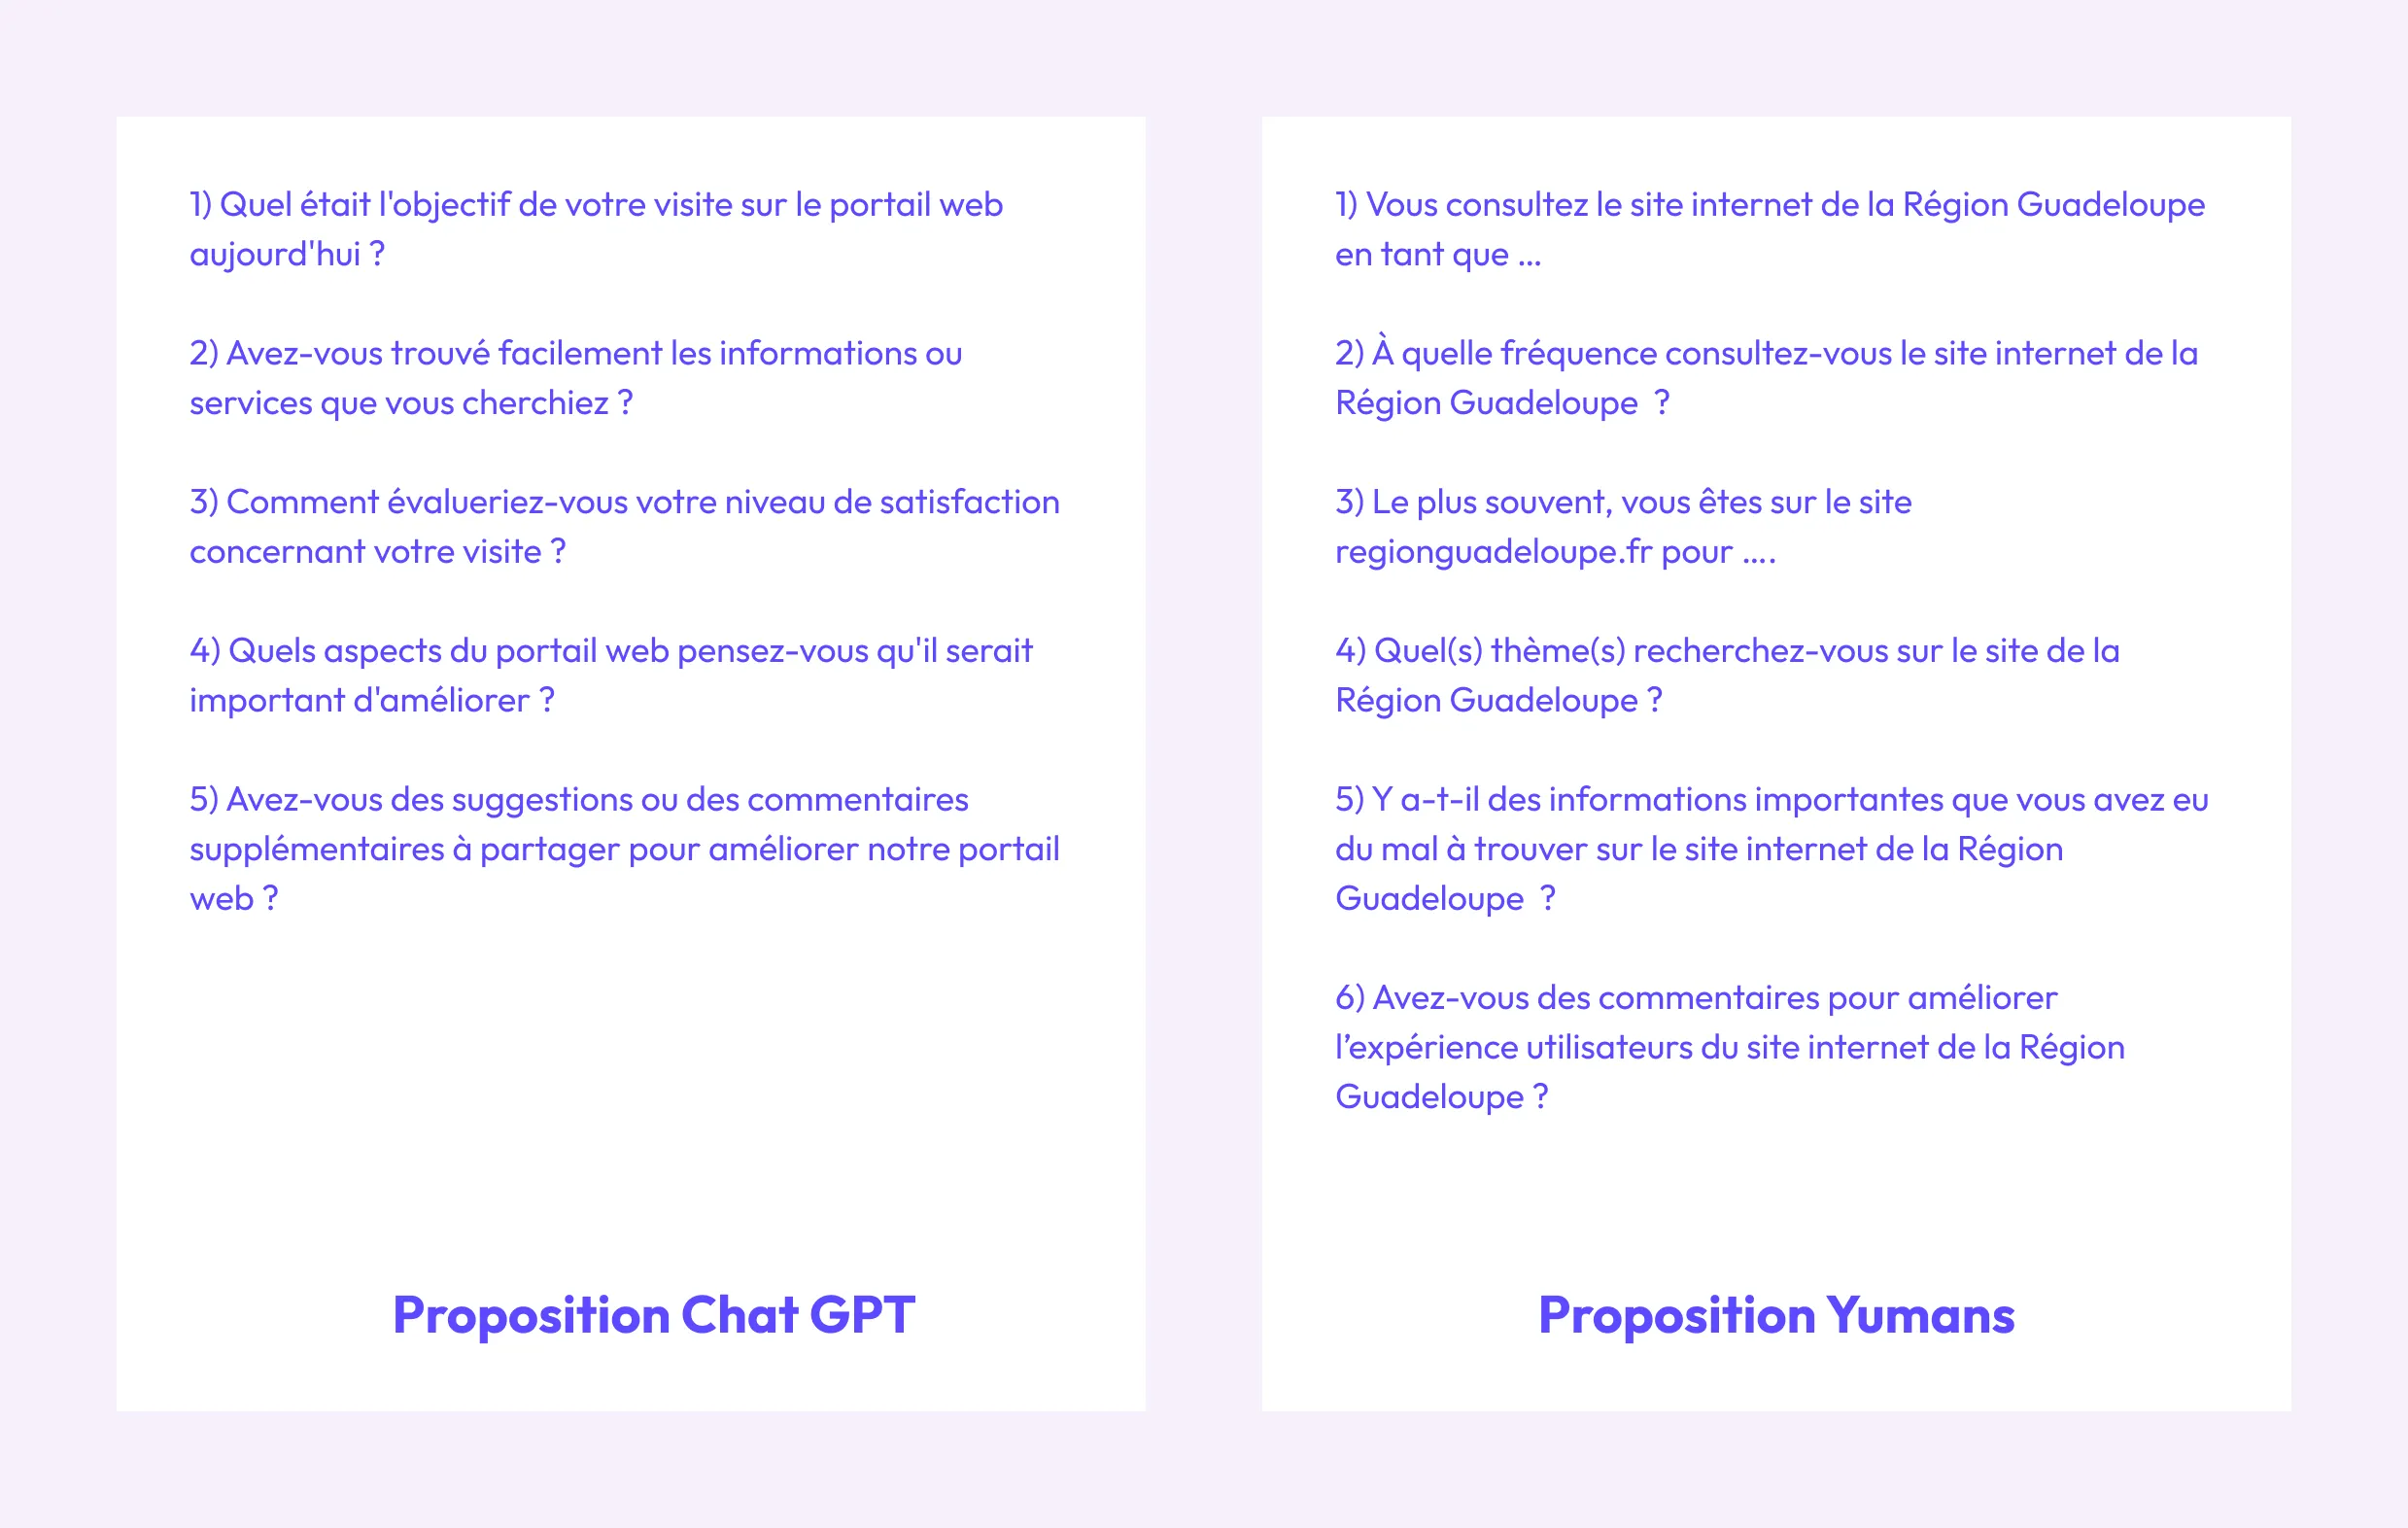 Questionnaire chat GPT vs Yumans